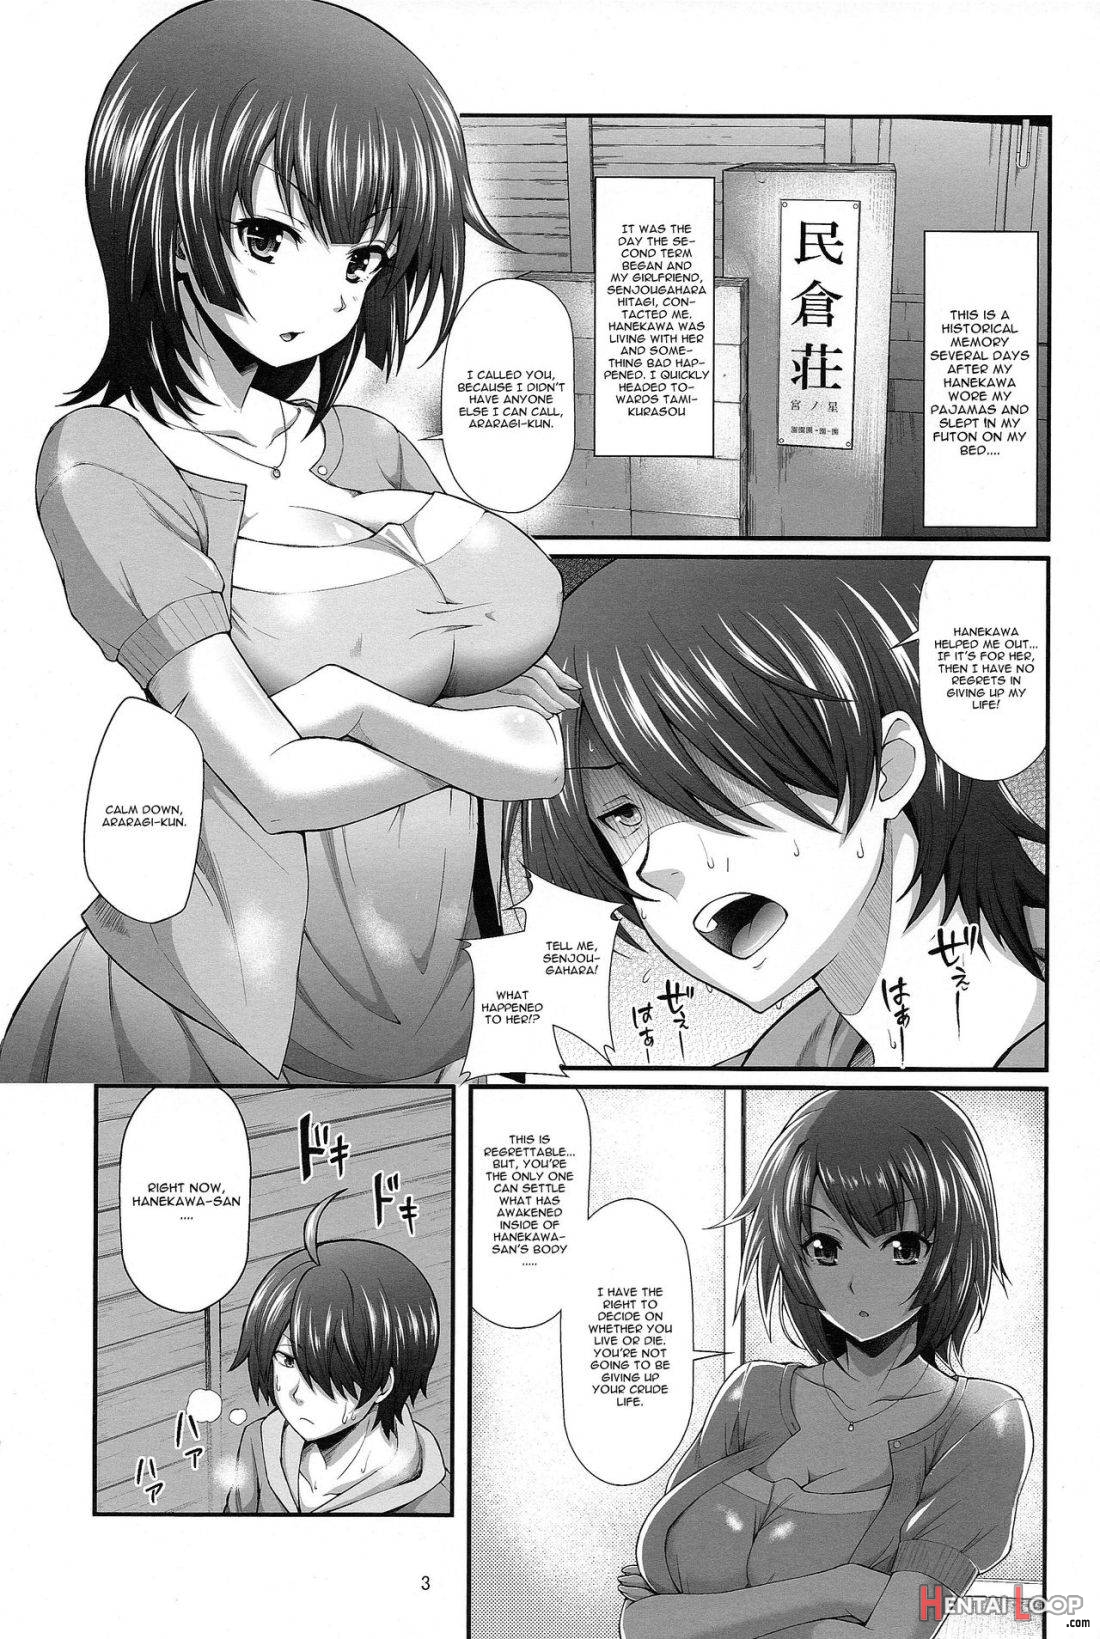 Pachimonogatari Part 7: Tsubasa Ambivalence page 2